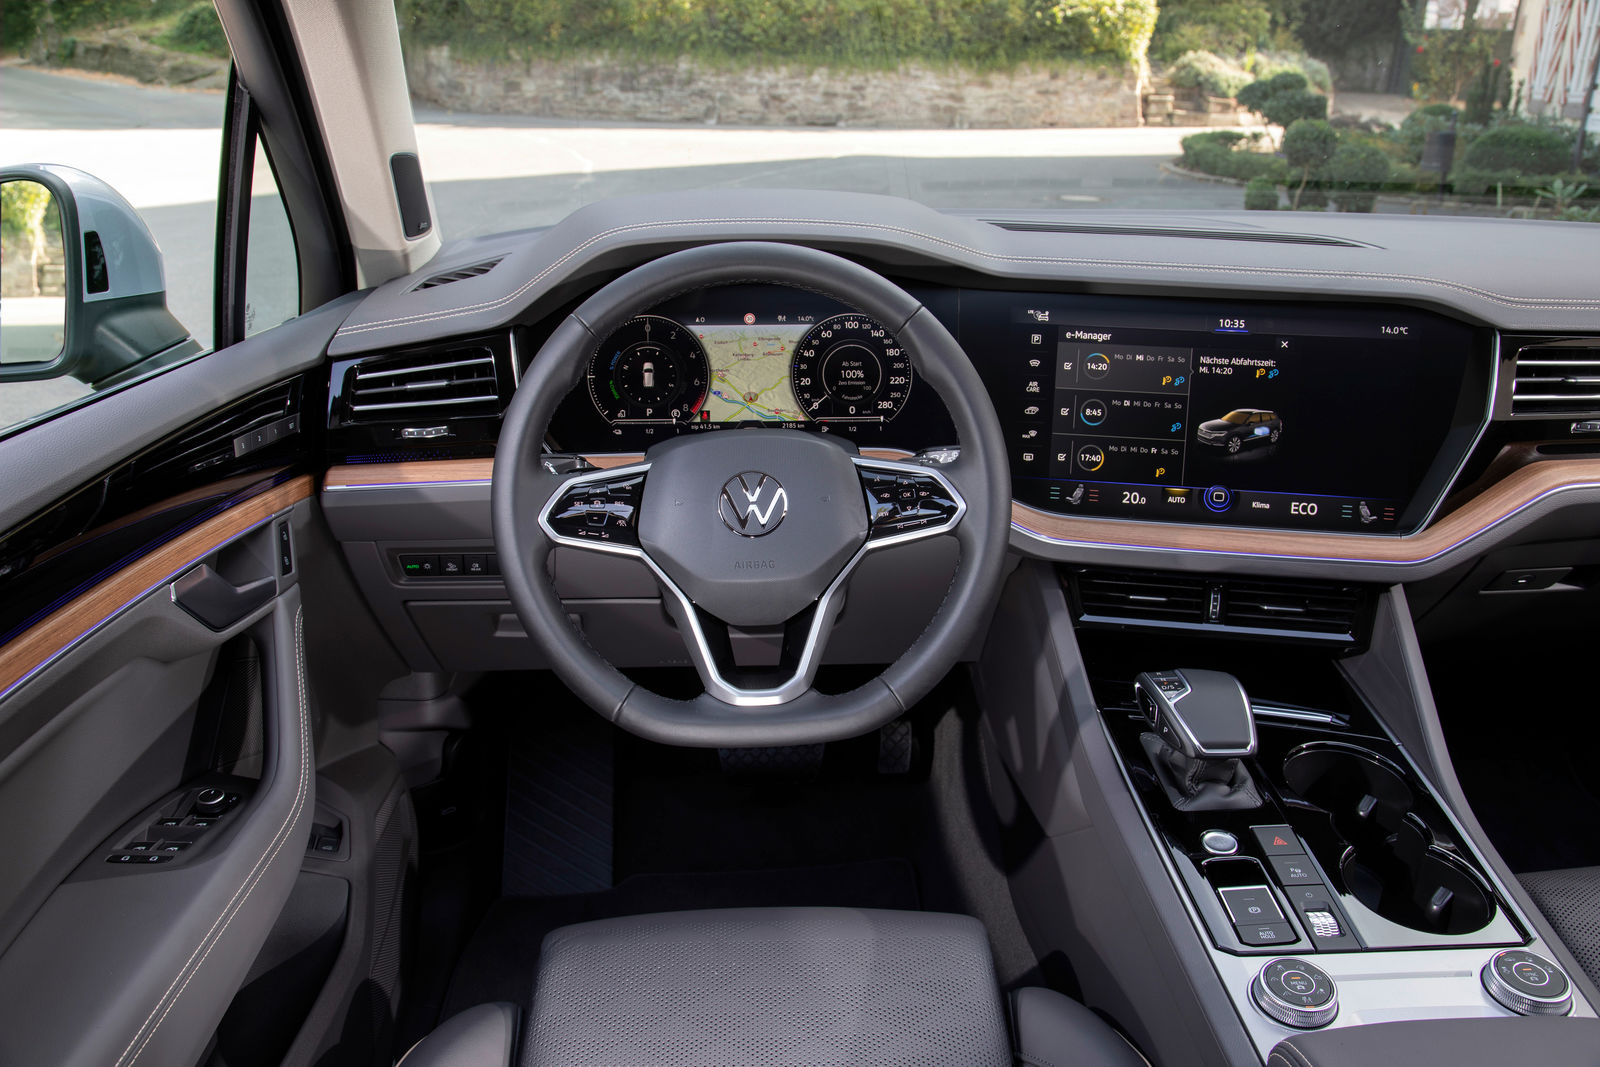 The new Volkswagen Touareg eHybrid